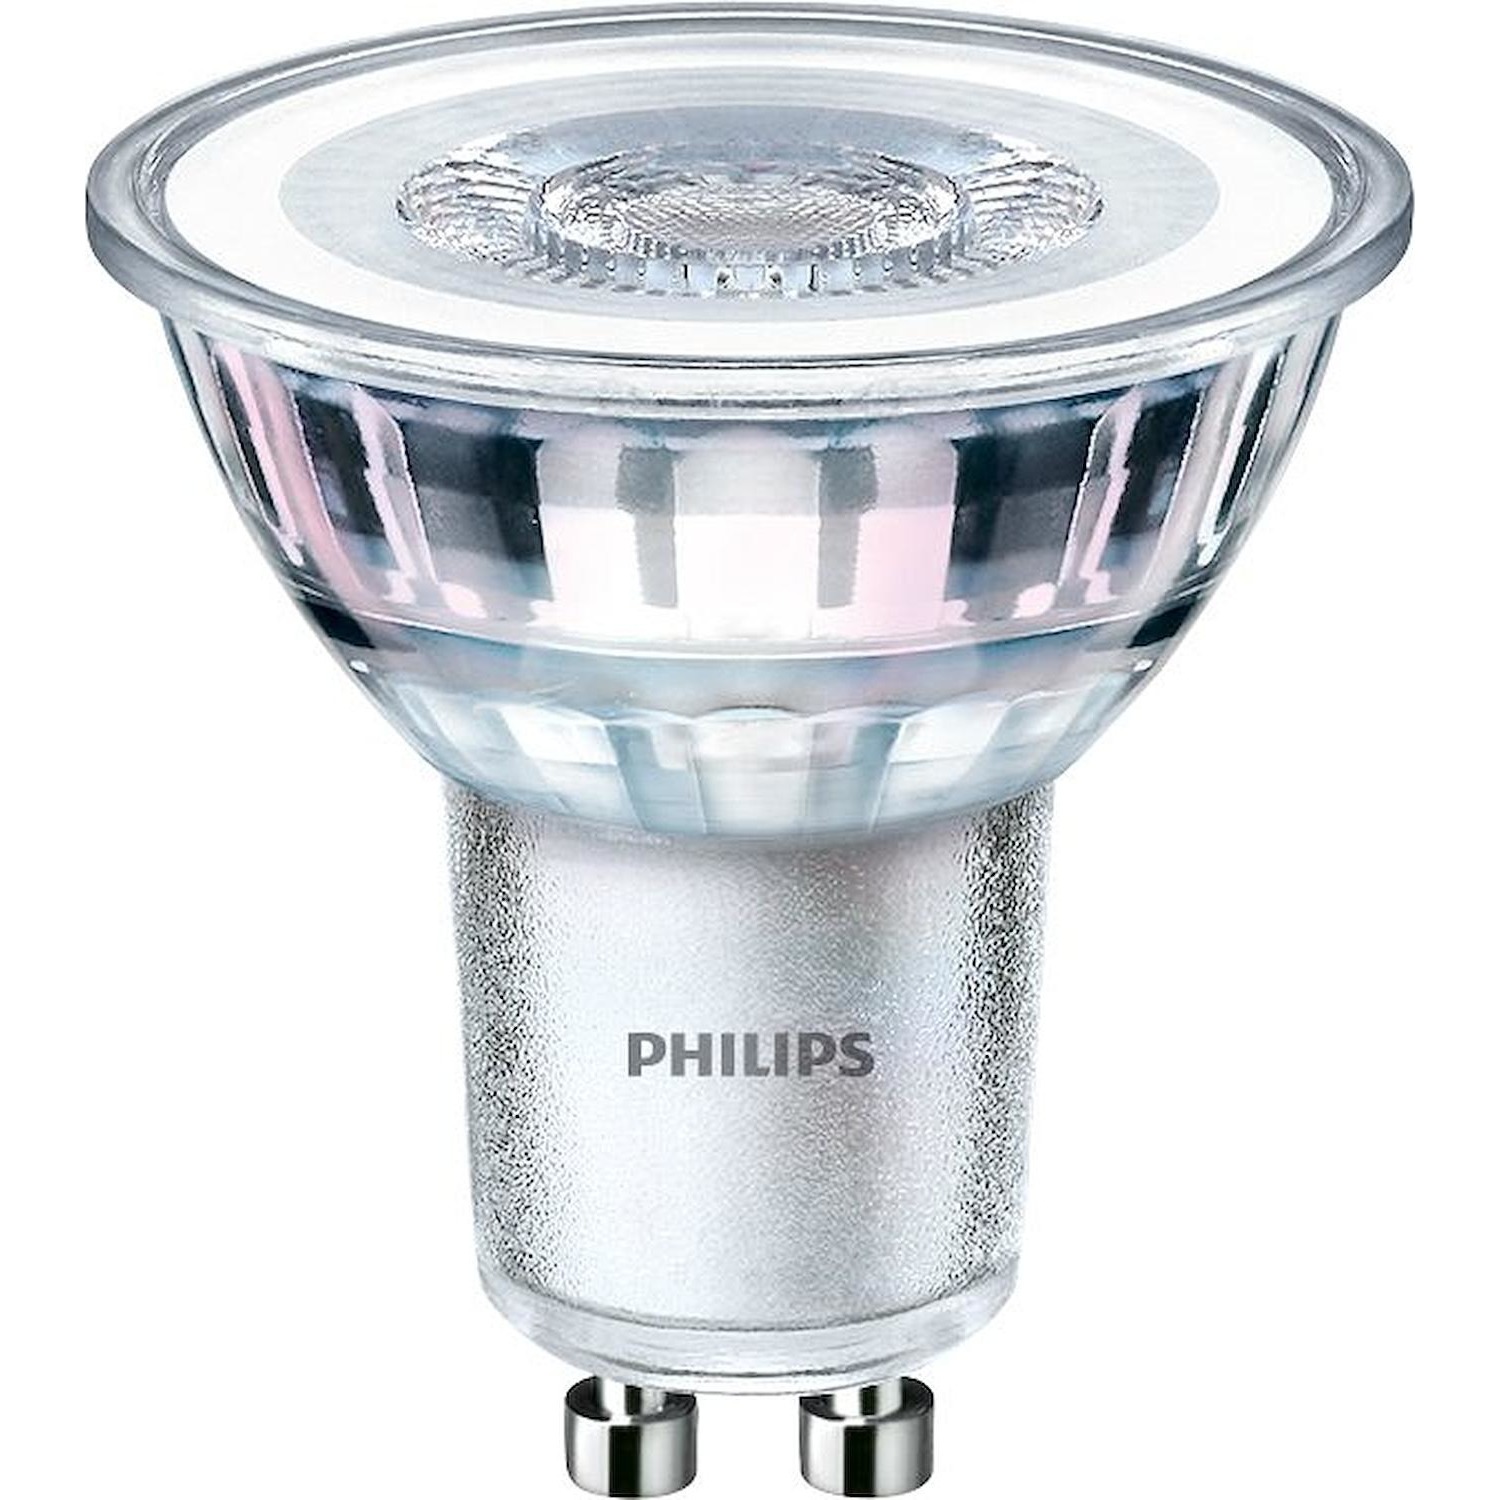 Immagine per Lampadina faretto Philips LED GU10 35W CLD da DIMOStore